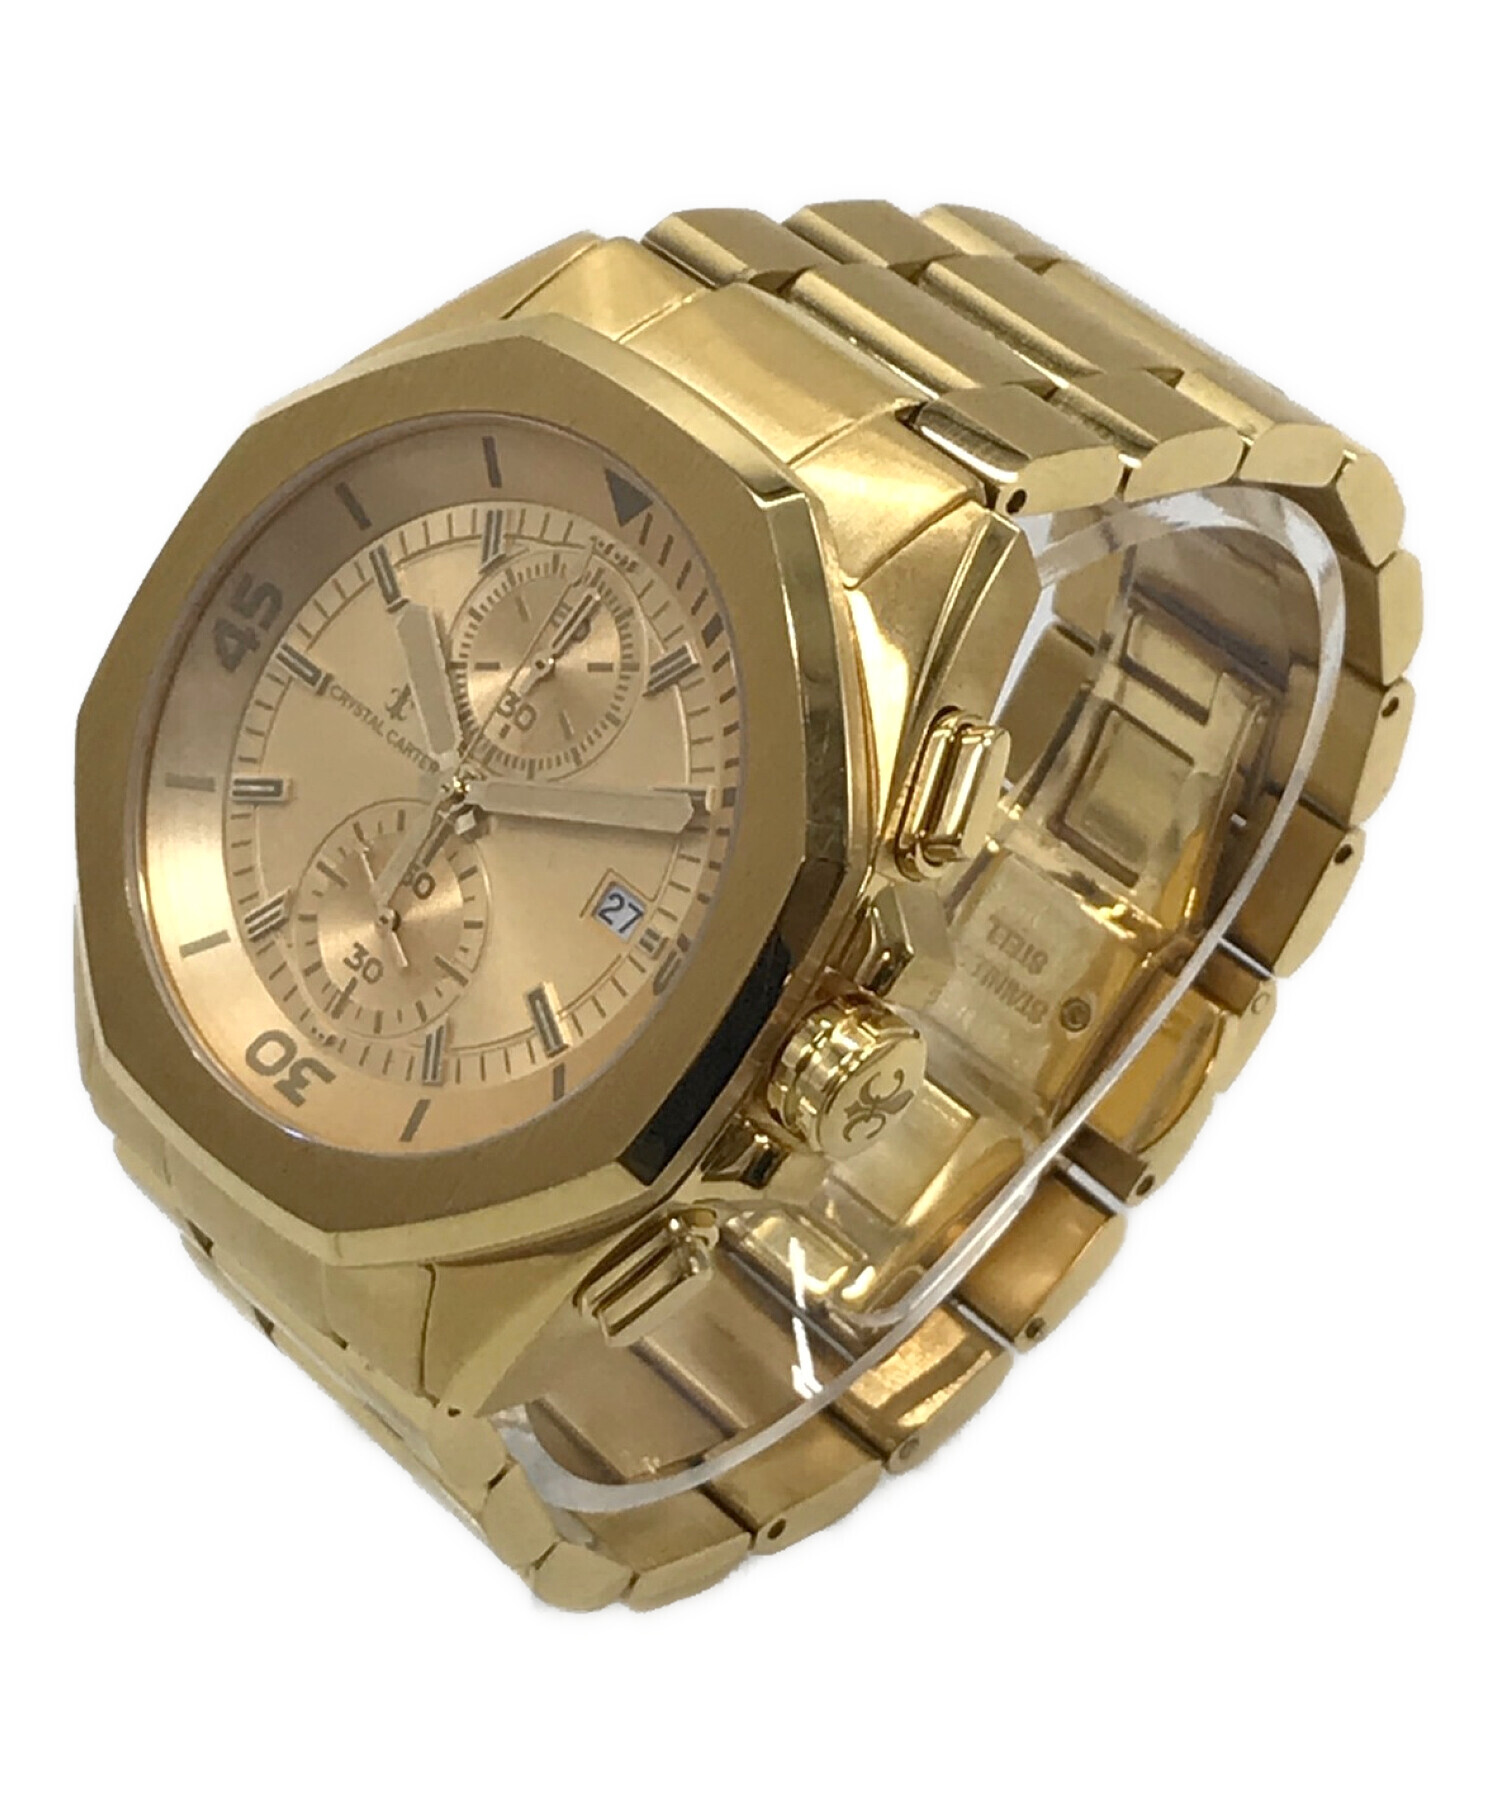 crystal carter クリスタルカーター 腕時計 - 時計